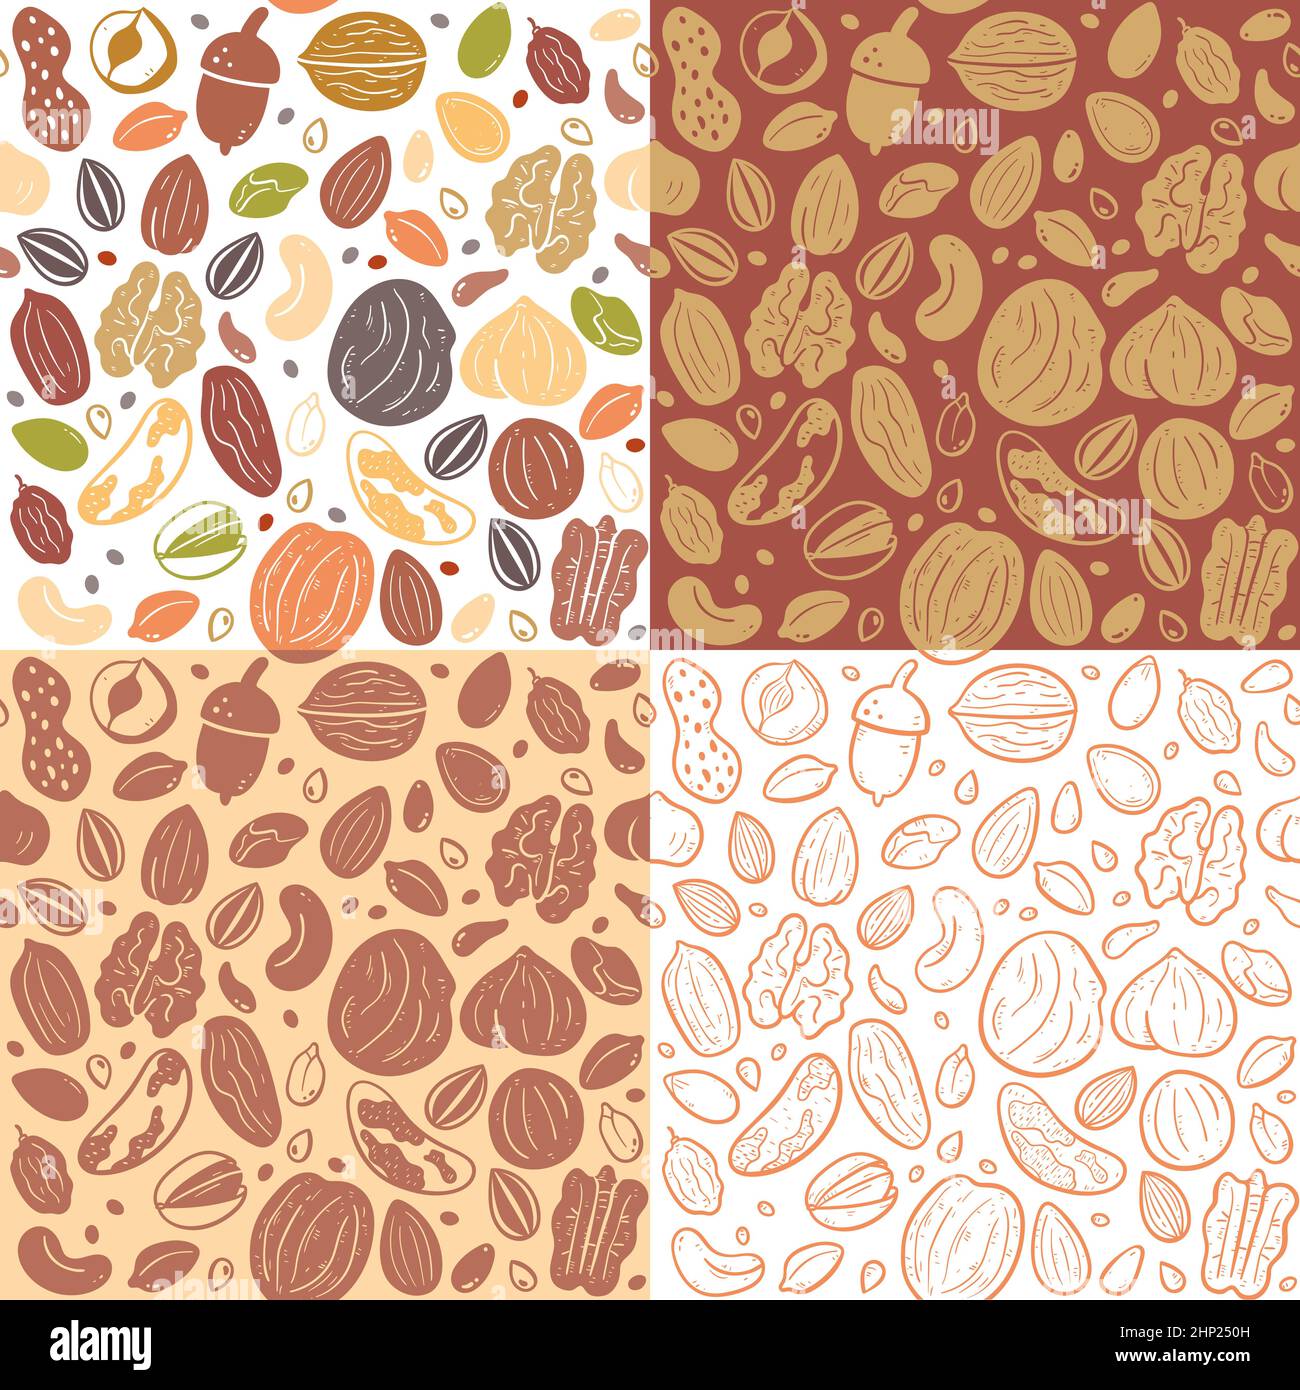 Nuts and Seeds nahtlose Mustersammlung. Abbildung: Zutaten für das Kochen. Farbenfrohe, monochrome Silhouetten und Doodle-Stil. Vektor-Illus Stock Vektor